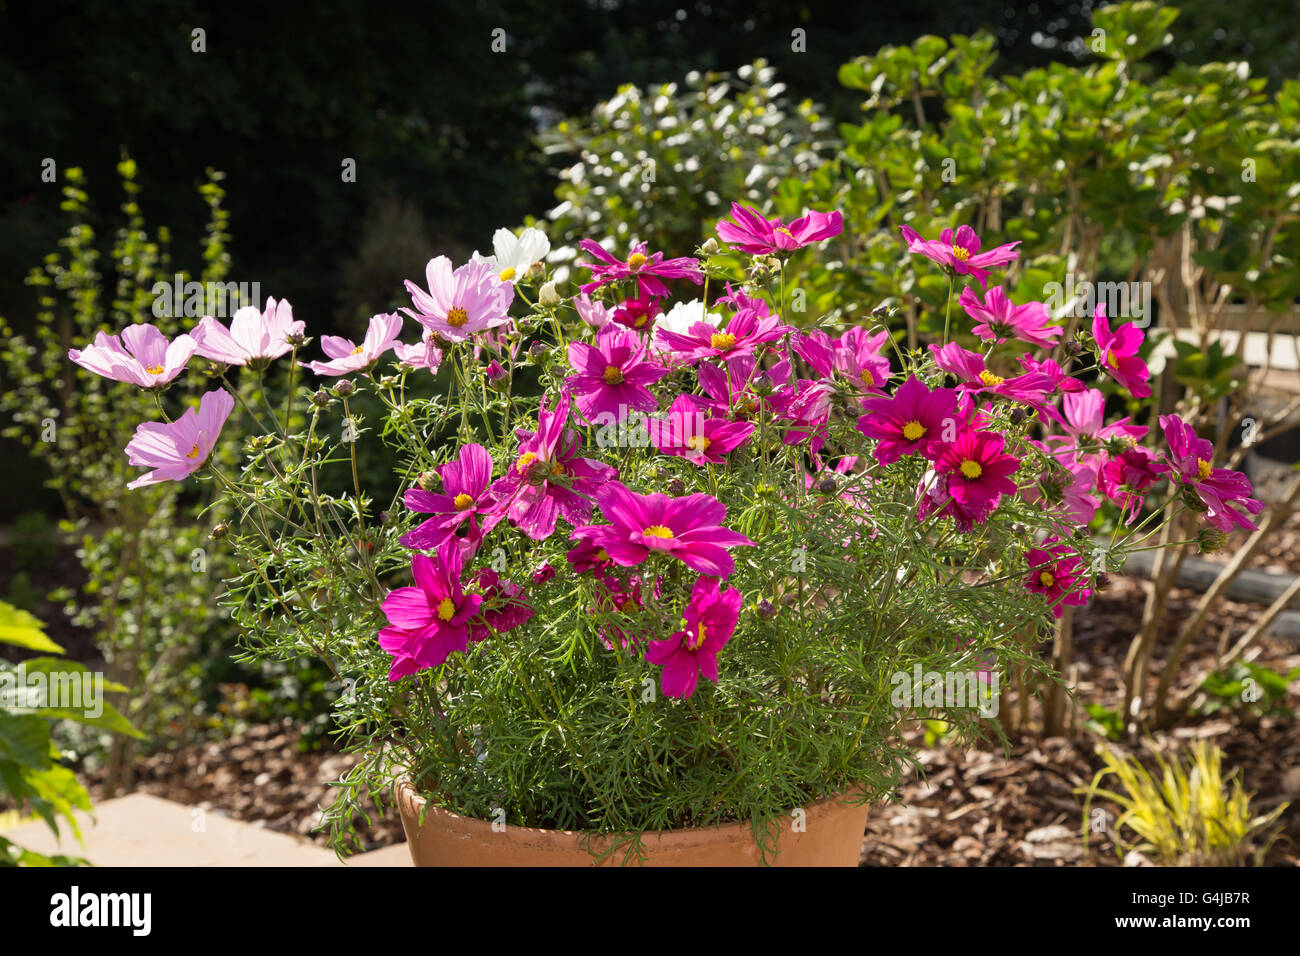 Cosmos fleurs en croissance dans un pot de jardin Photo Stock - Alamy